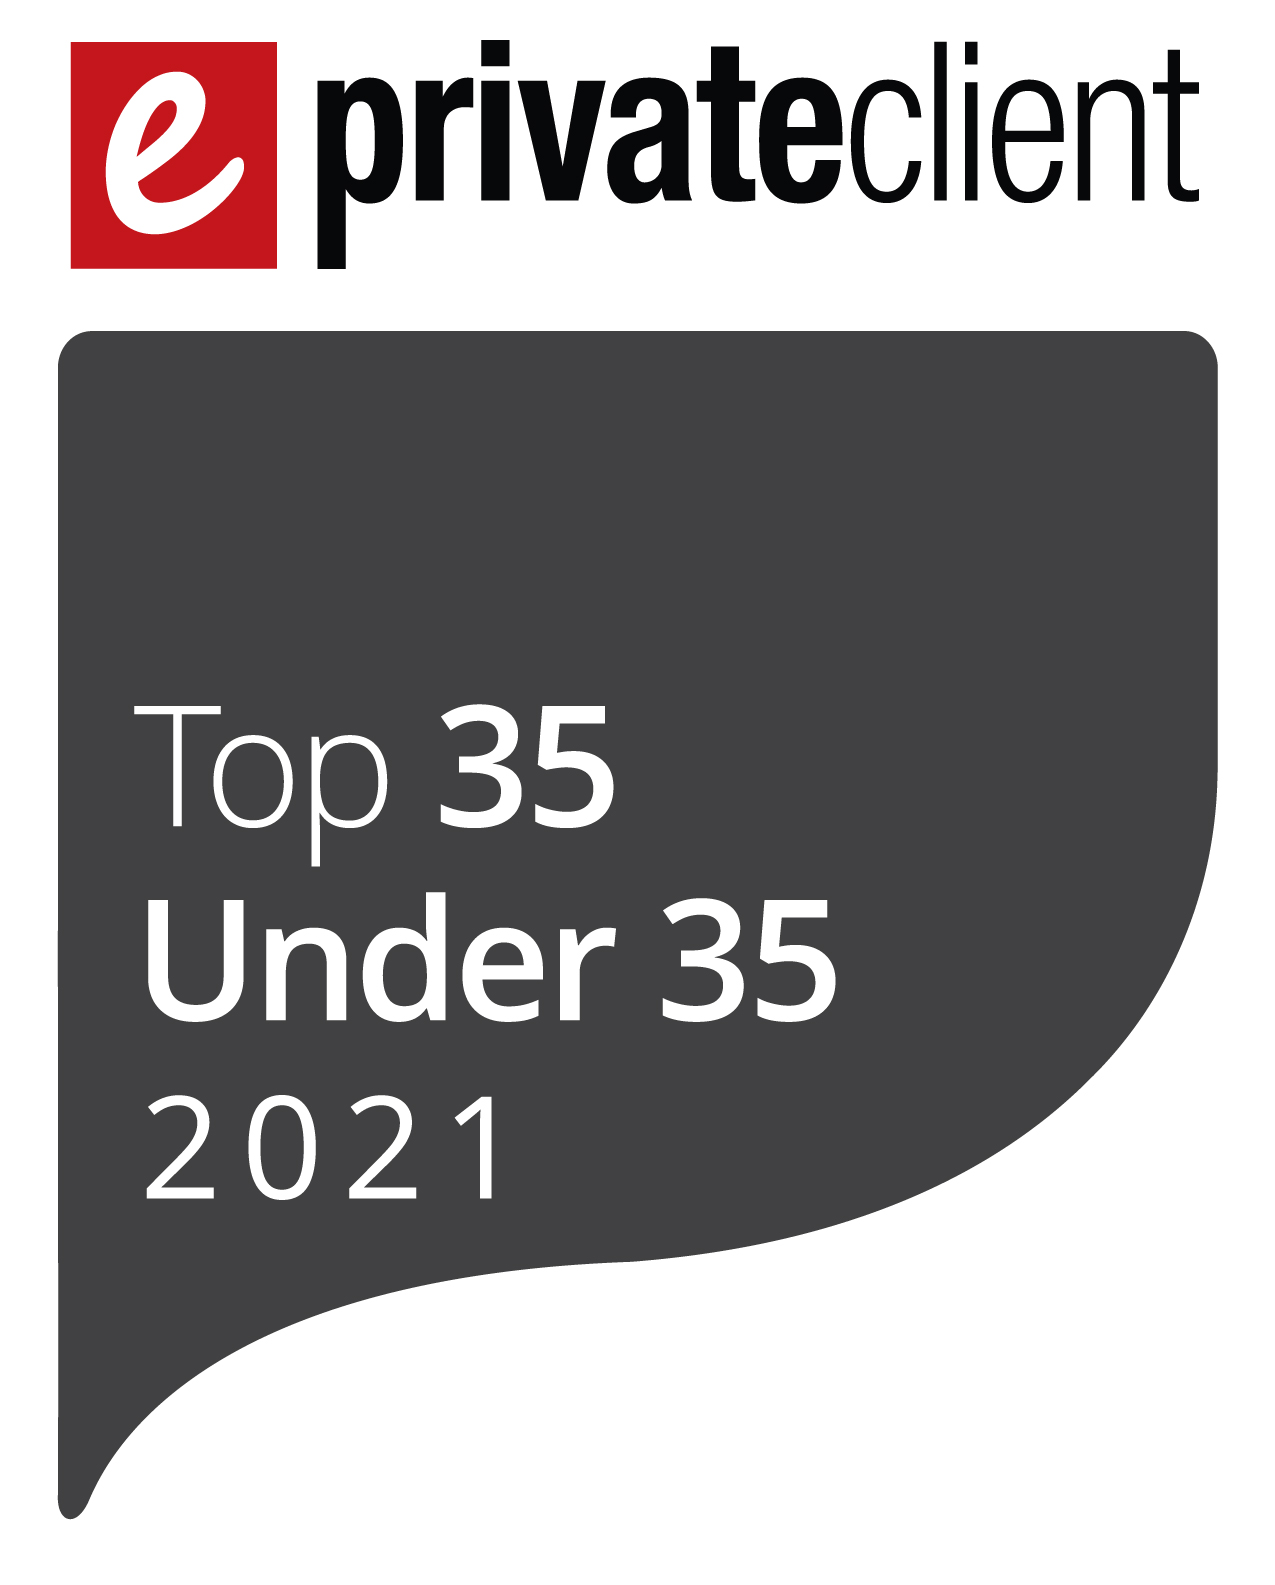 EXCLUSIVE: 2021 eprivateclient Top 35 Under 35 - Men